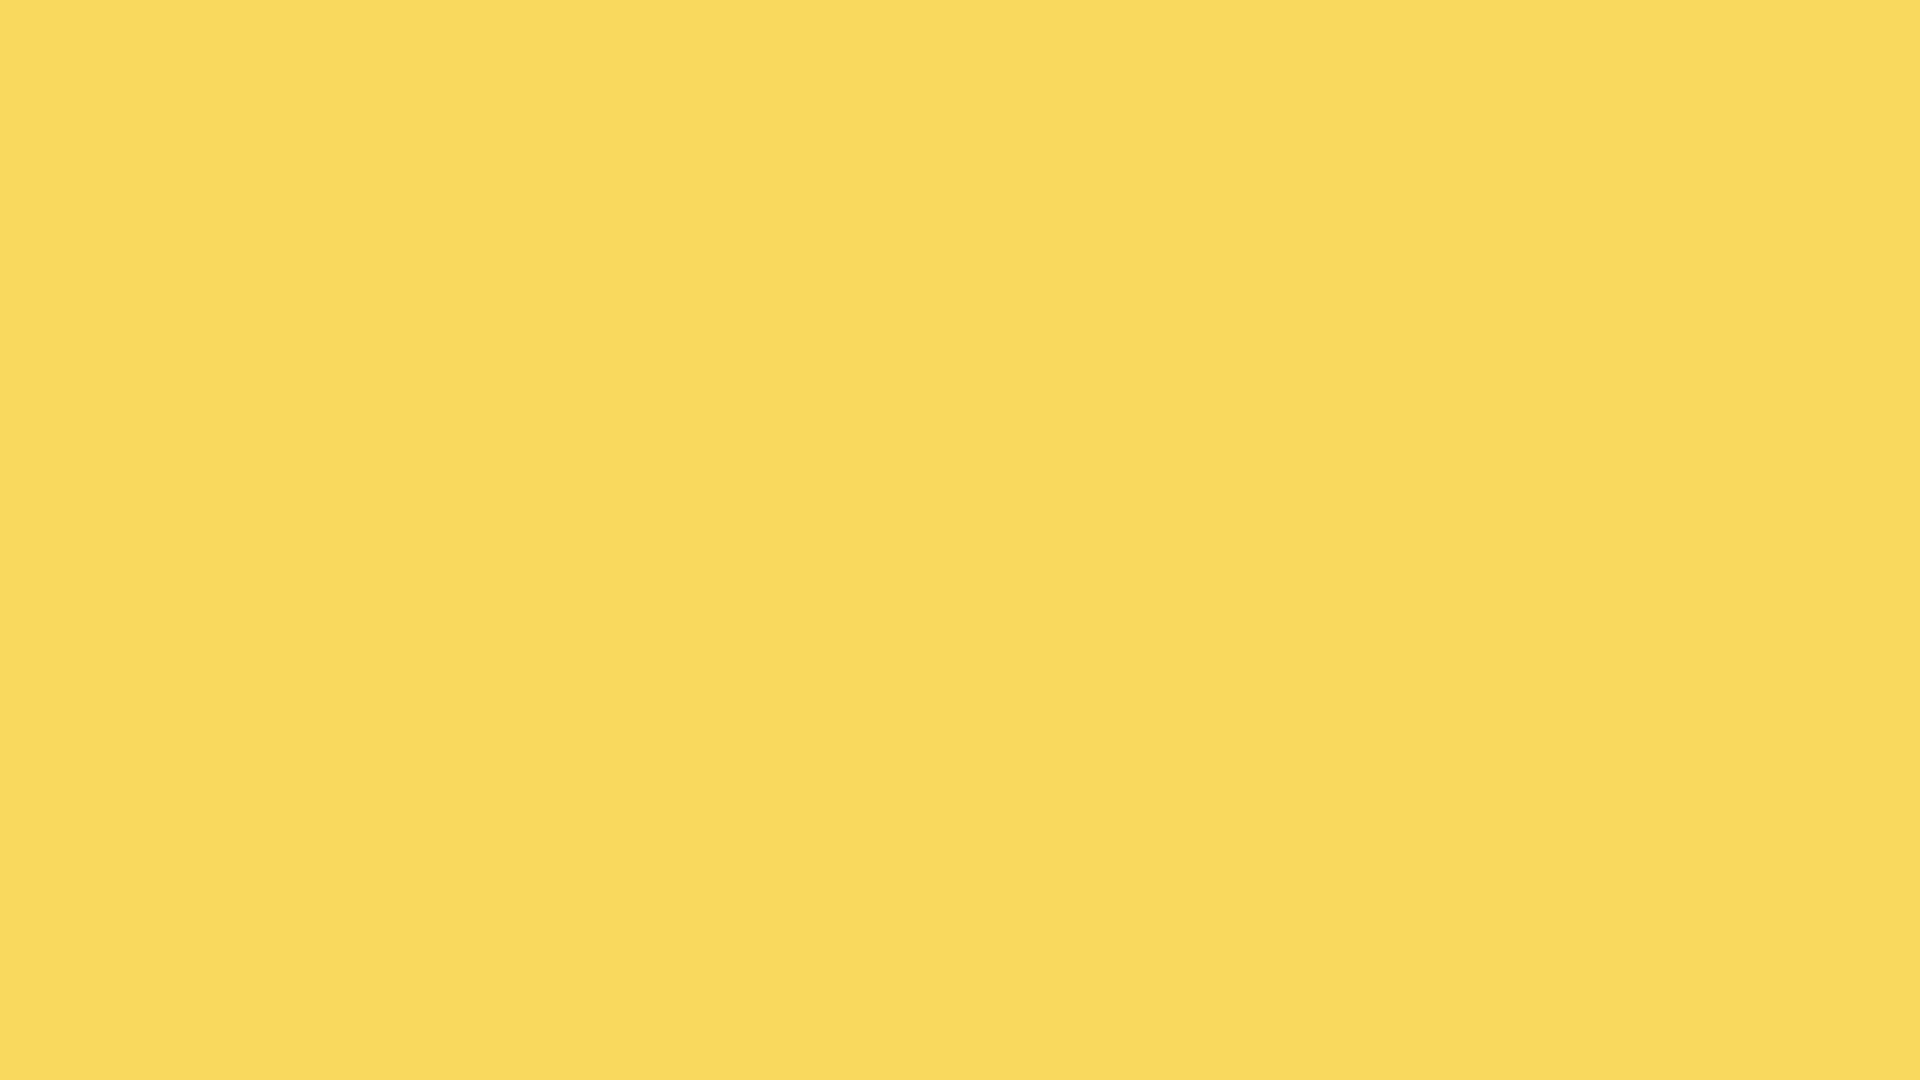 1920x1080 Stil De Grain Yellow Solid Color Background